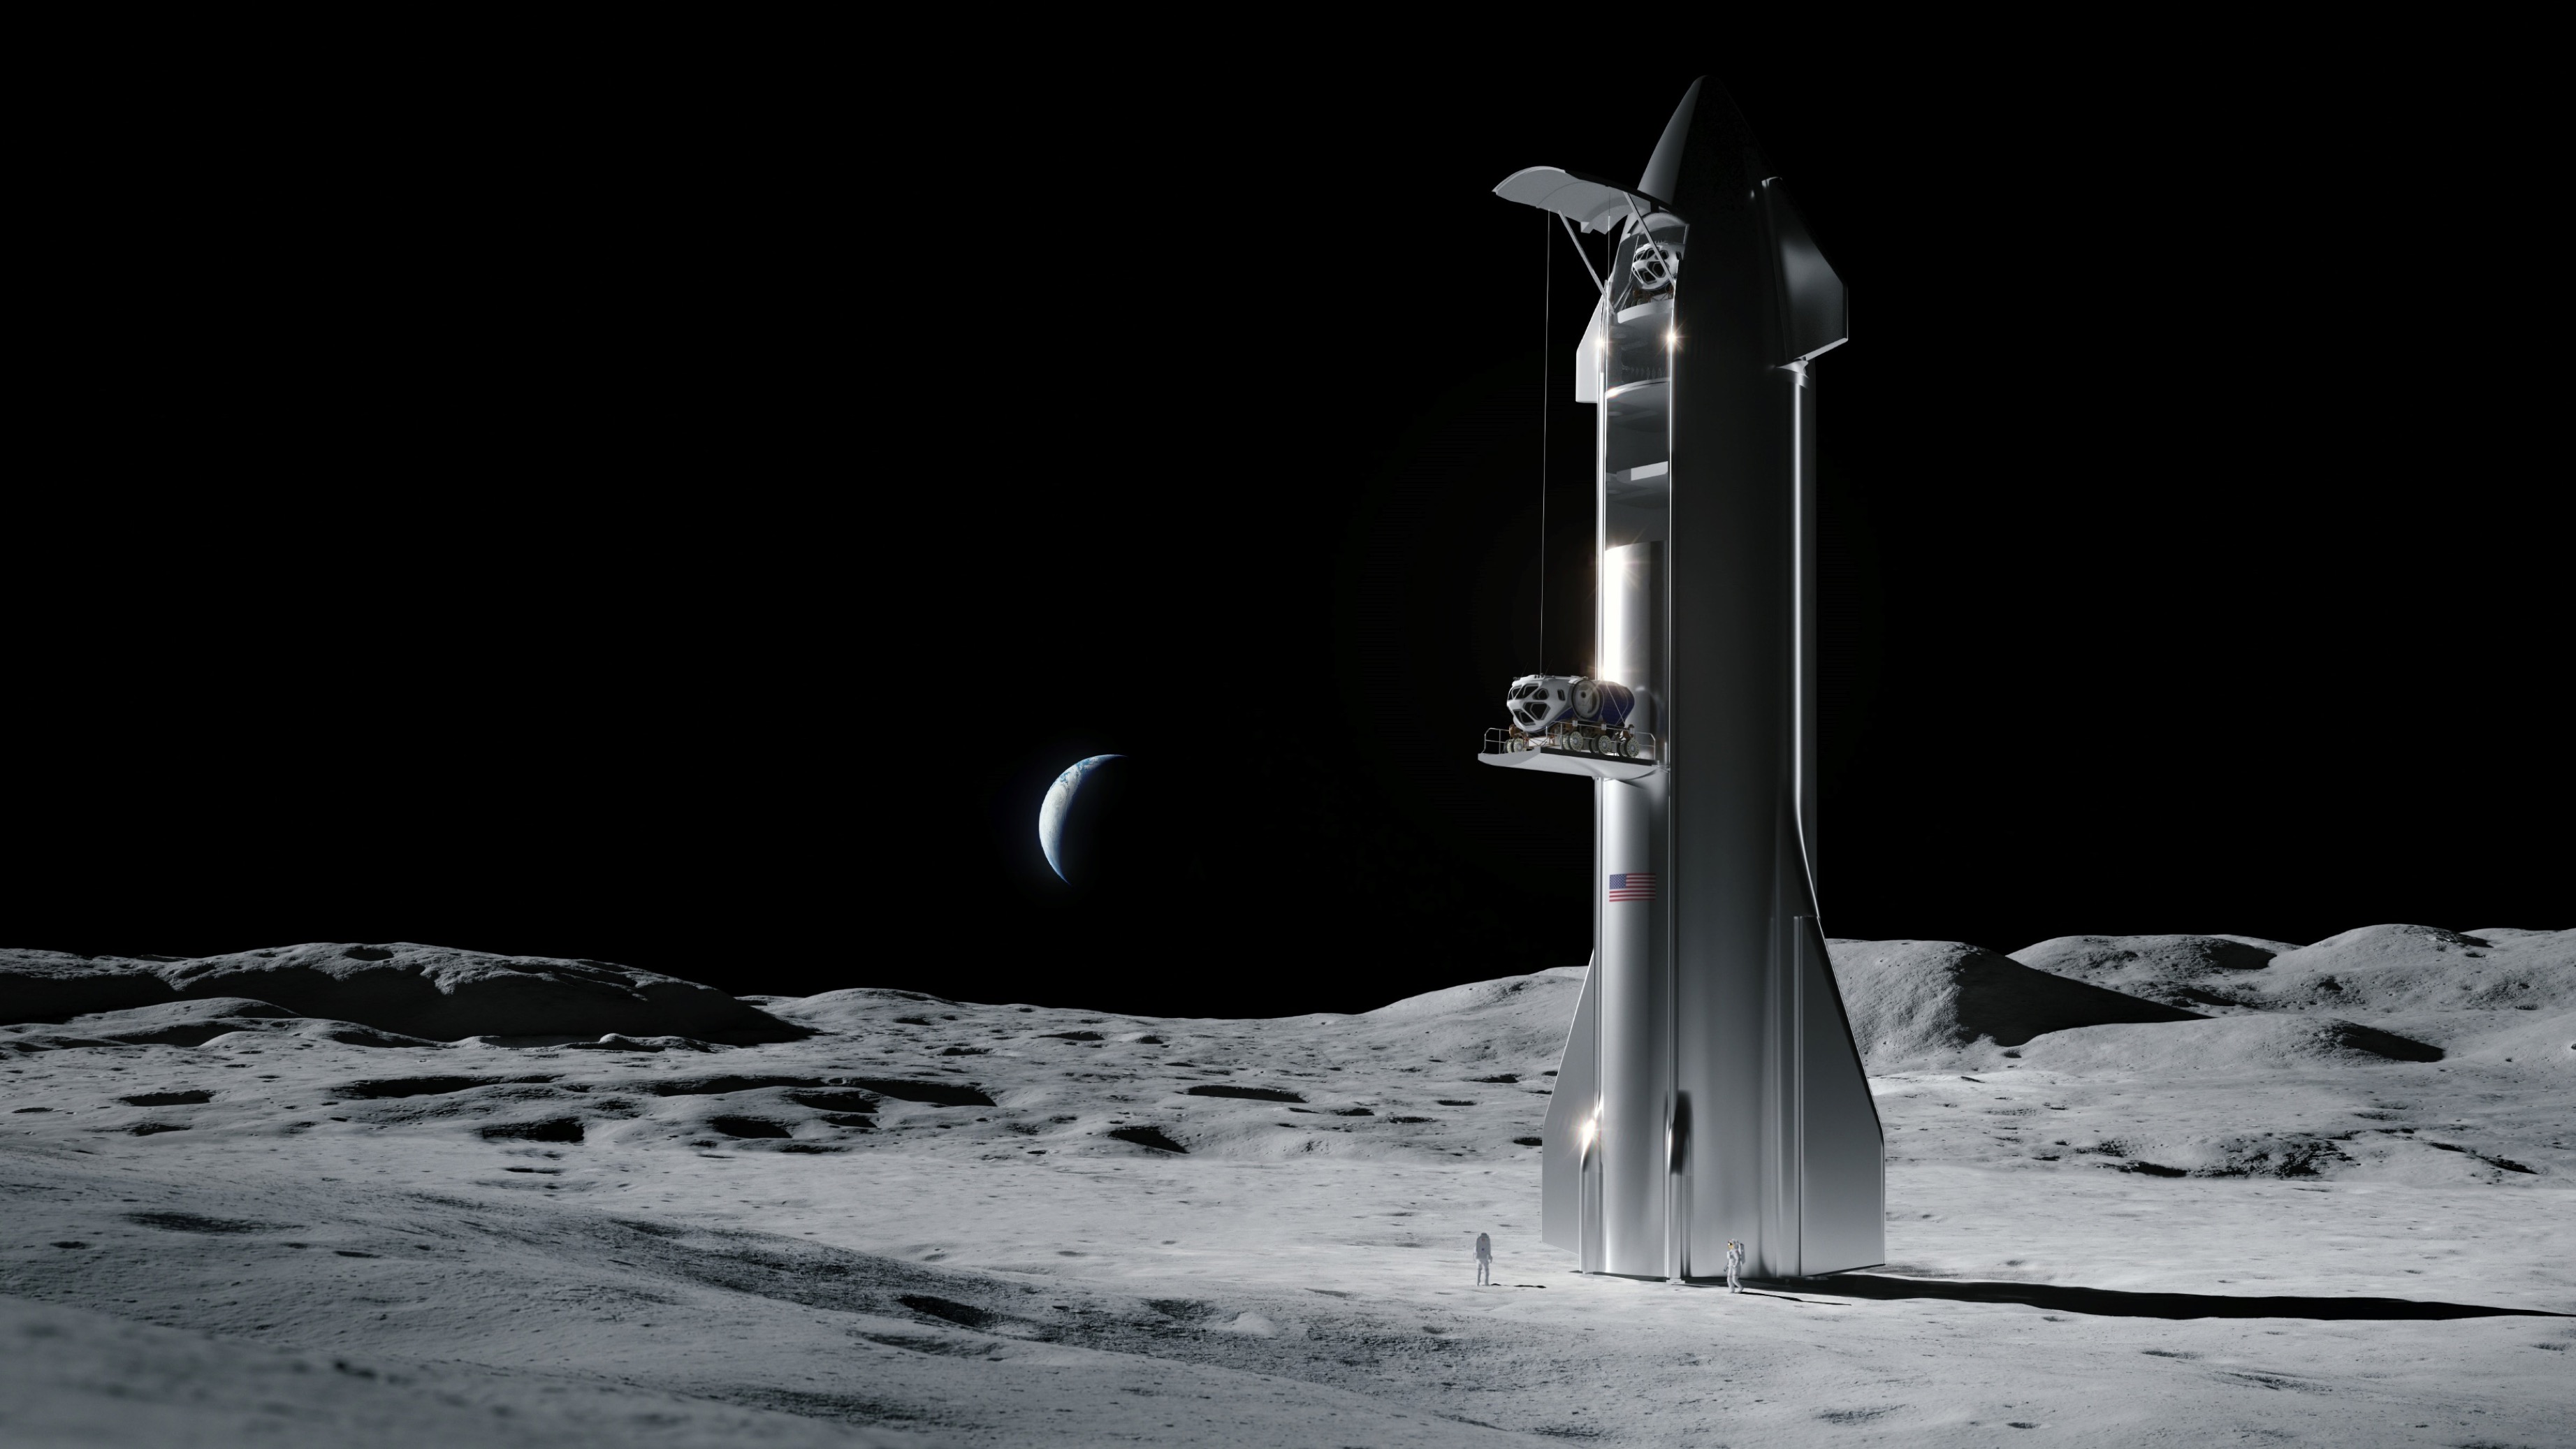 Художественная иллюстрация космического корабля SpaceX на Луне.